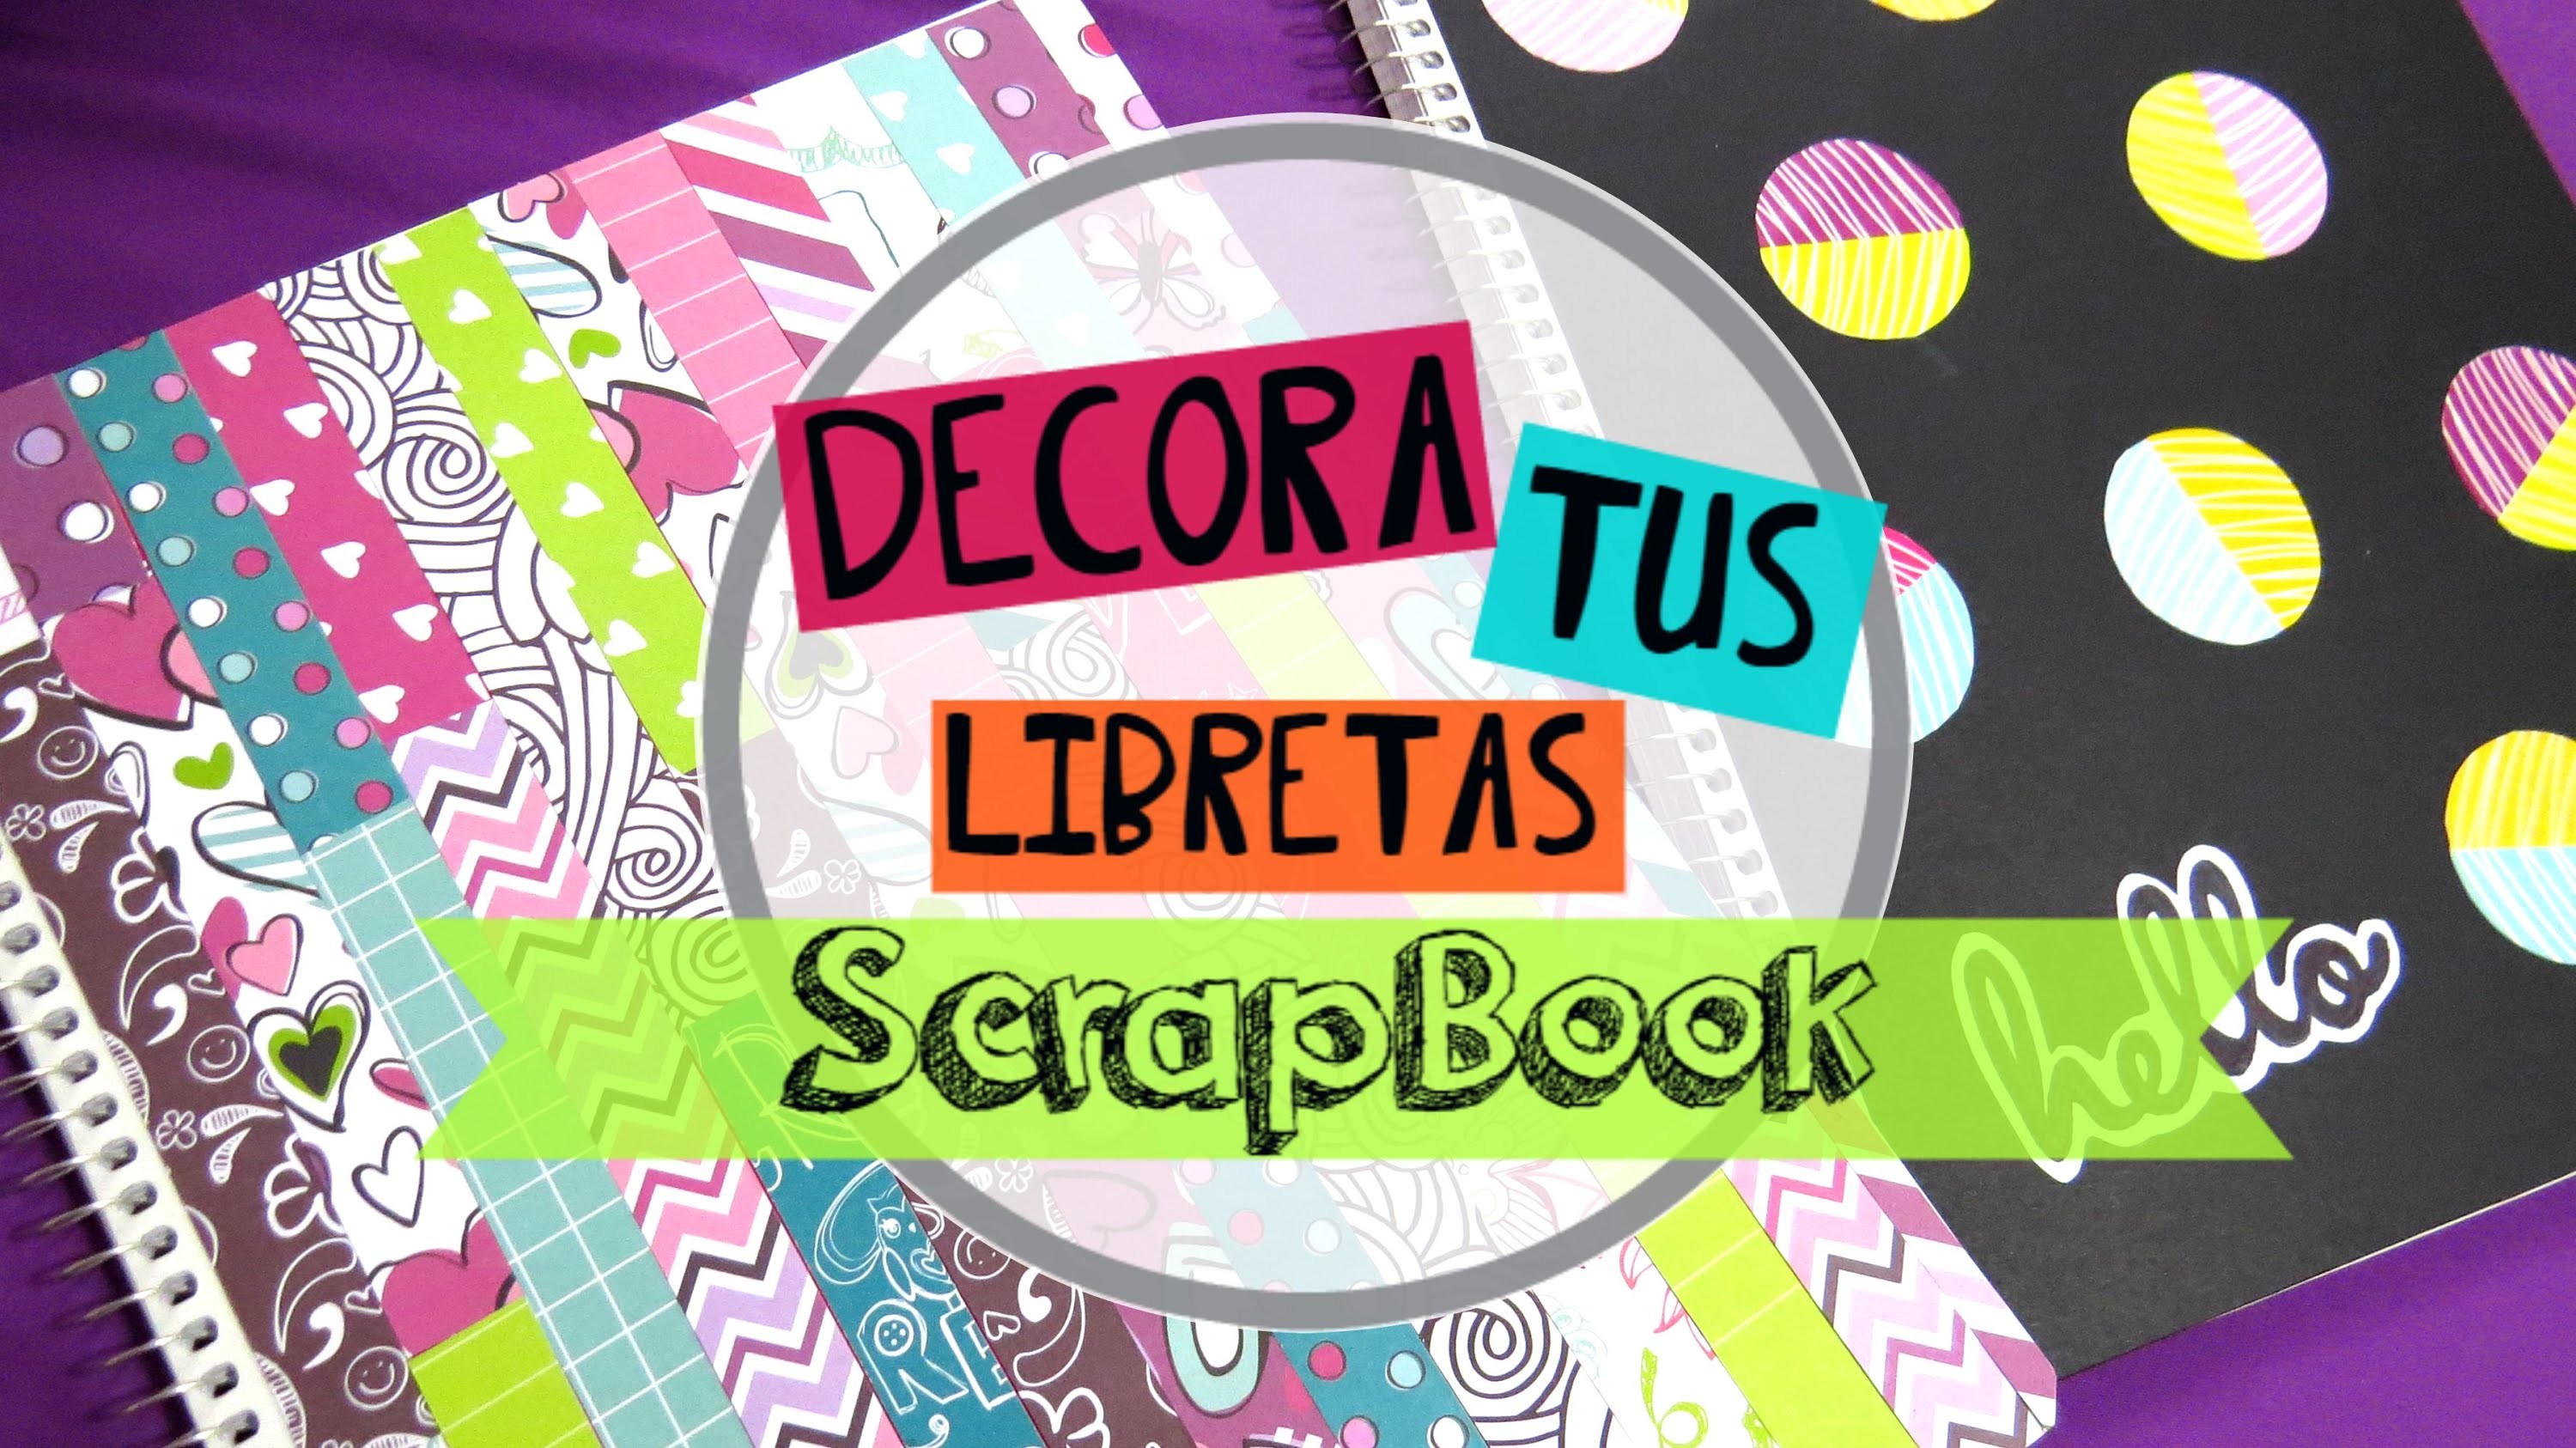 Libretas scrapbook-tutorial+SORTEO INTERNACIONAL +SALUDOS♥